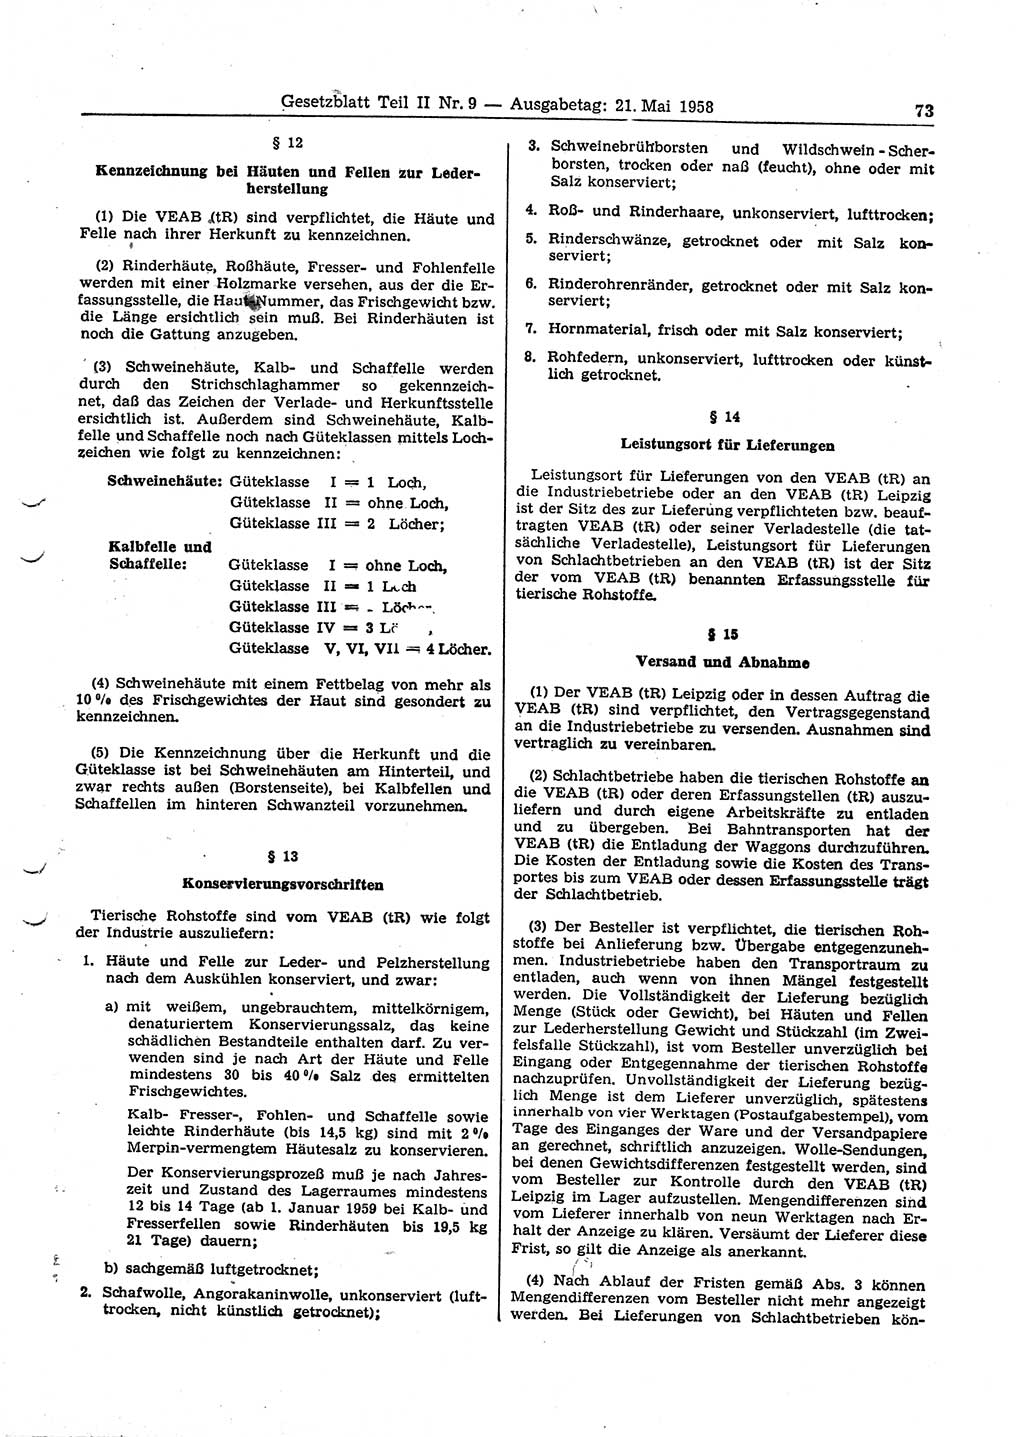 Gesetzblatt (GBl.) der Deutschen Demokratischen Republik (DDR) Teil ⅠⅠ 1958, Seite 73 (GBl. DDR ⅠⅠ 1958, S. 73)